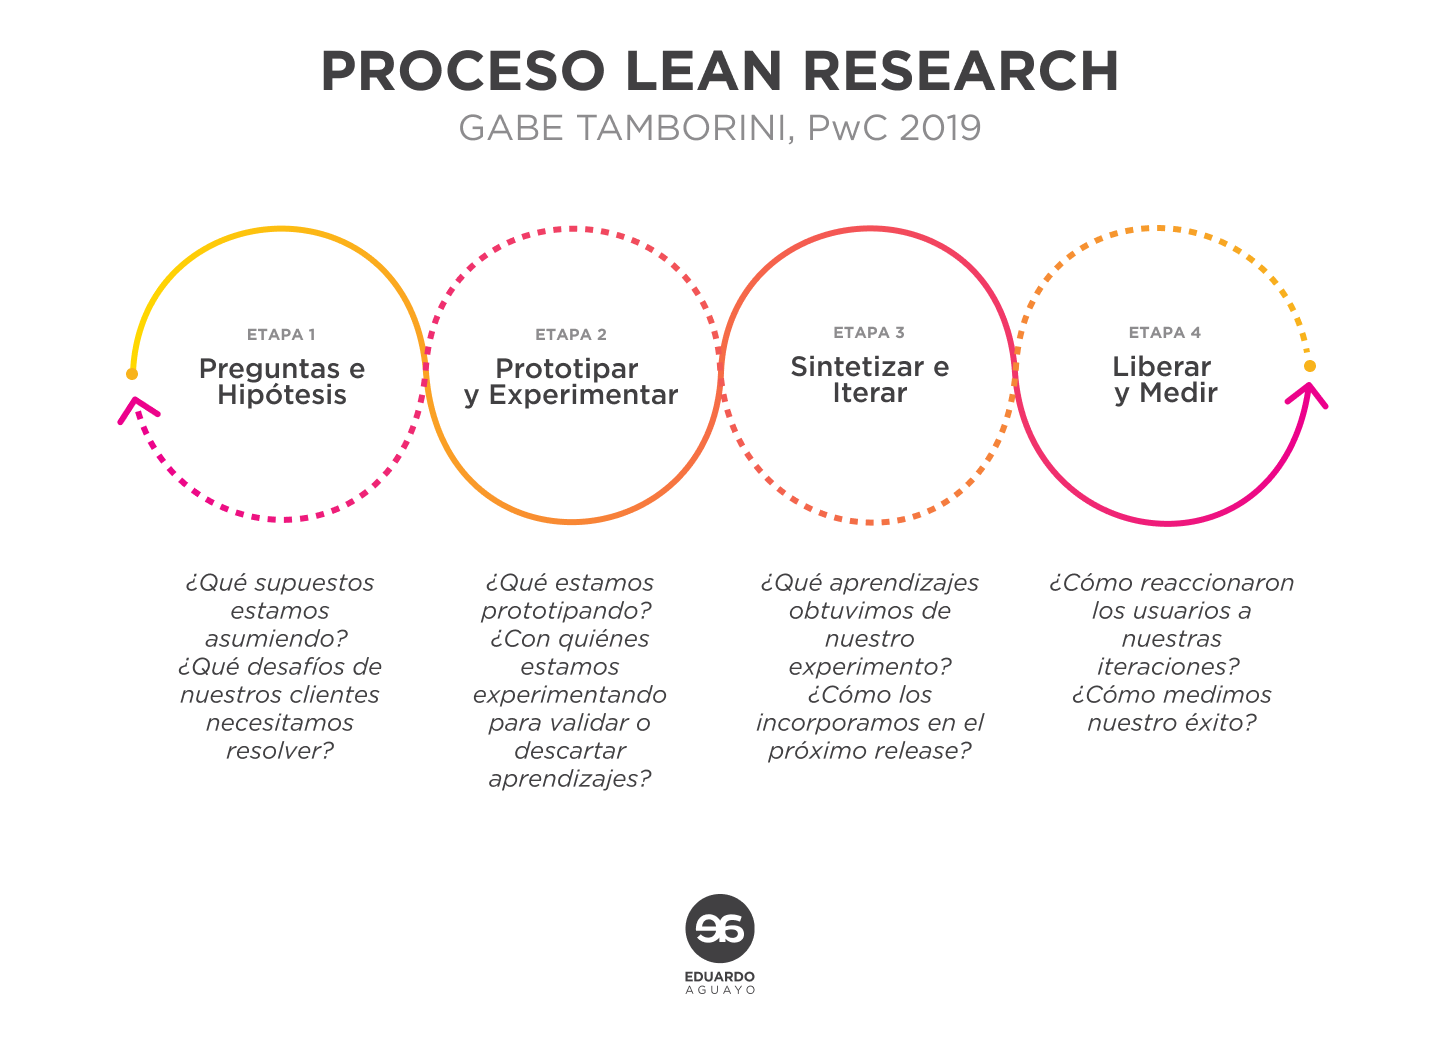 Imagen ilustrativa del proceso de Lean Research.